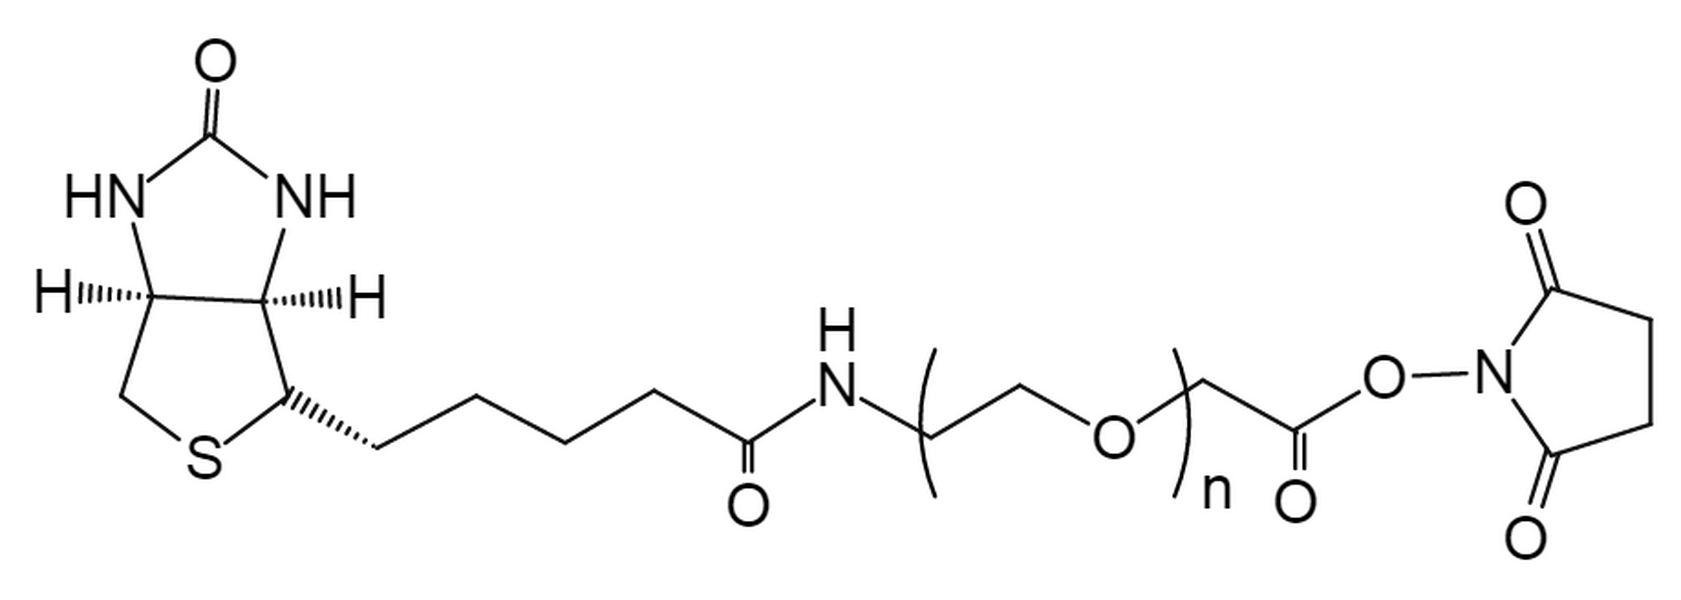 Biotin-PEG-SCM,MW 3.5K